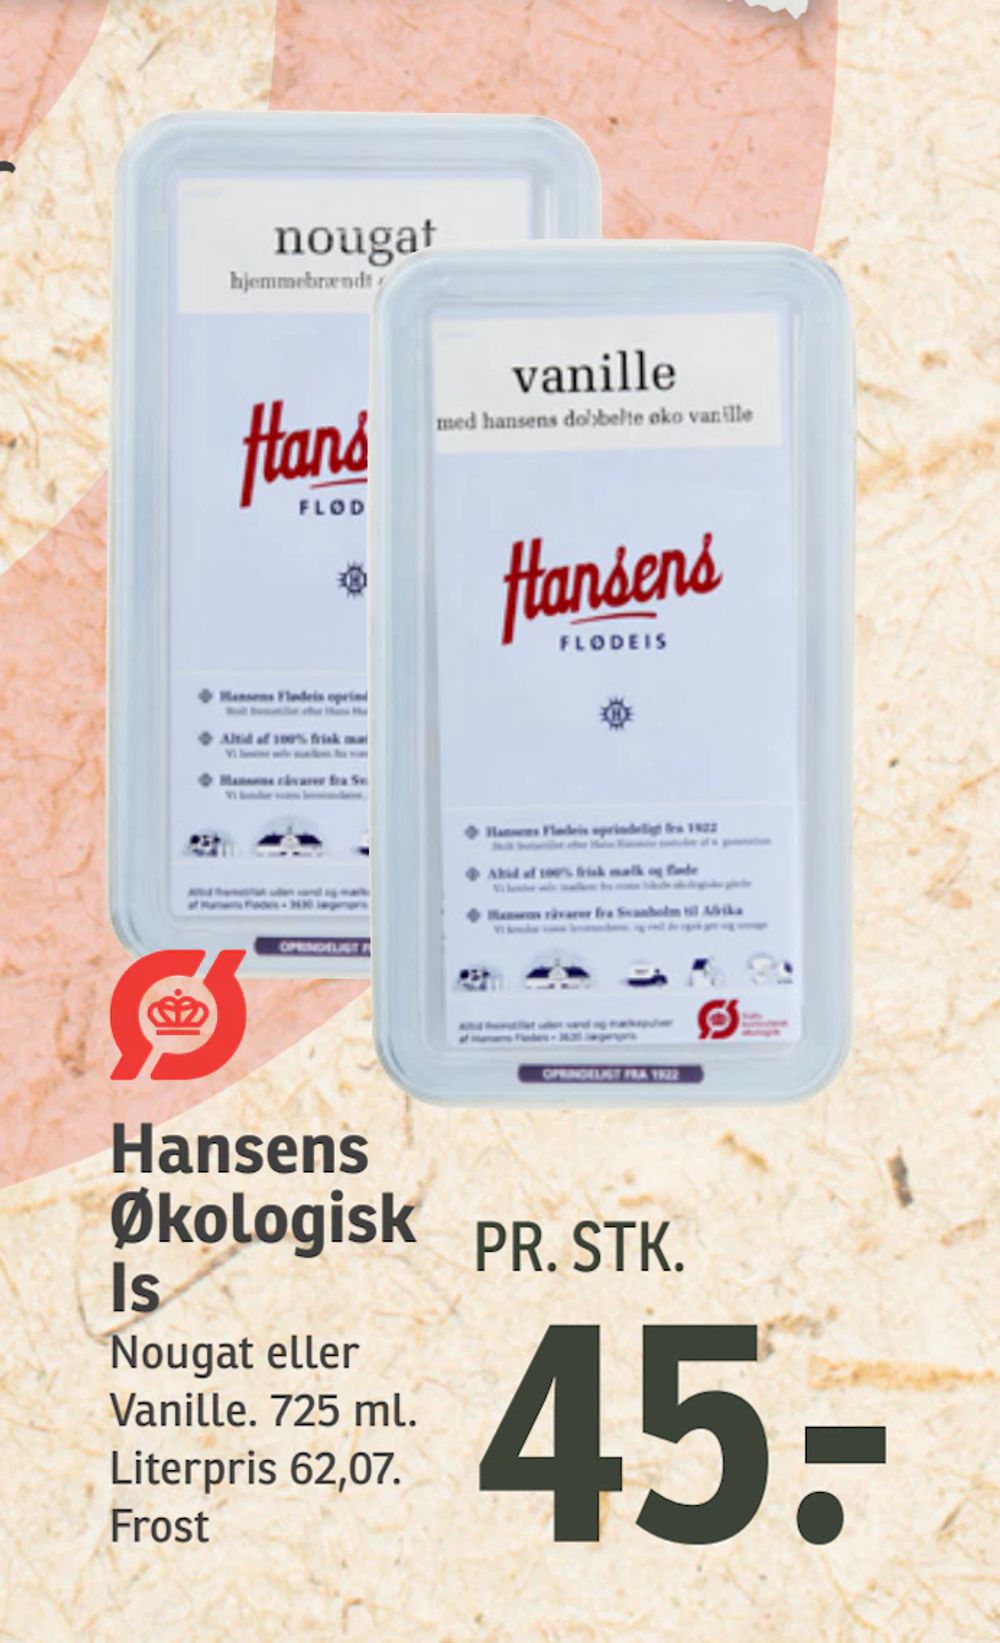 Tilbud på Hansens Økologisk Is fra SPAR til 45 kr.